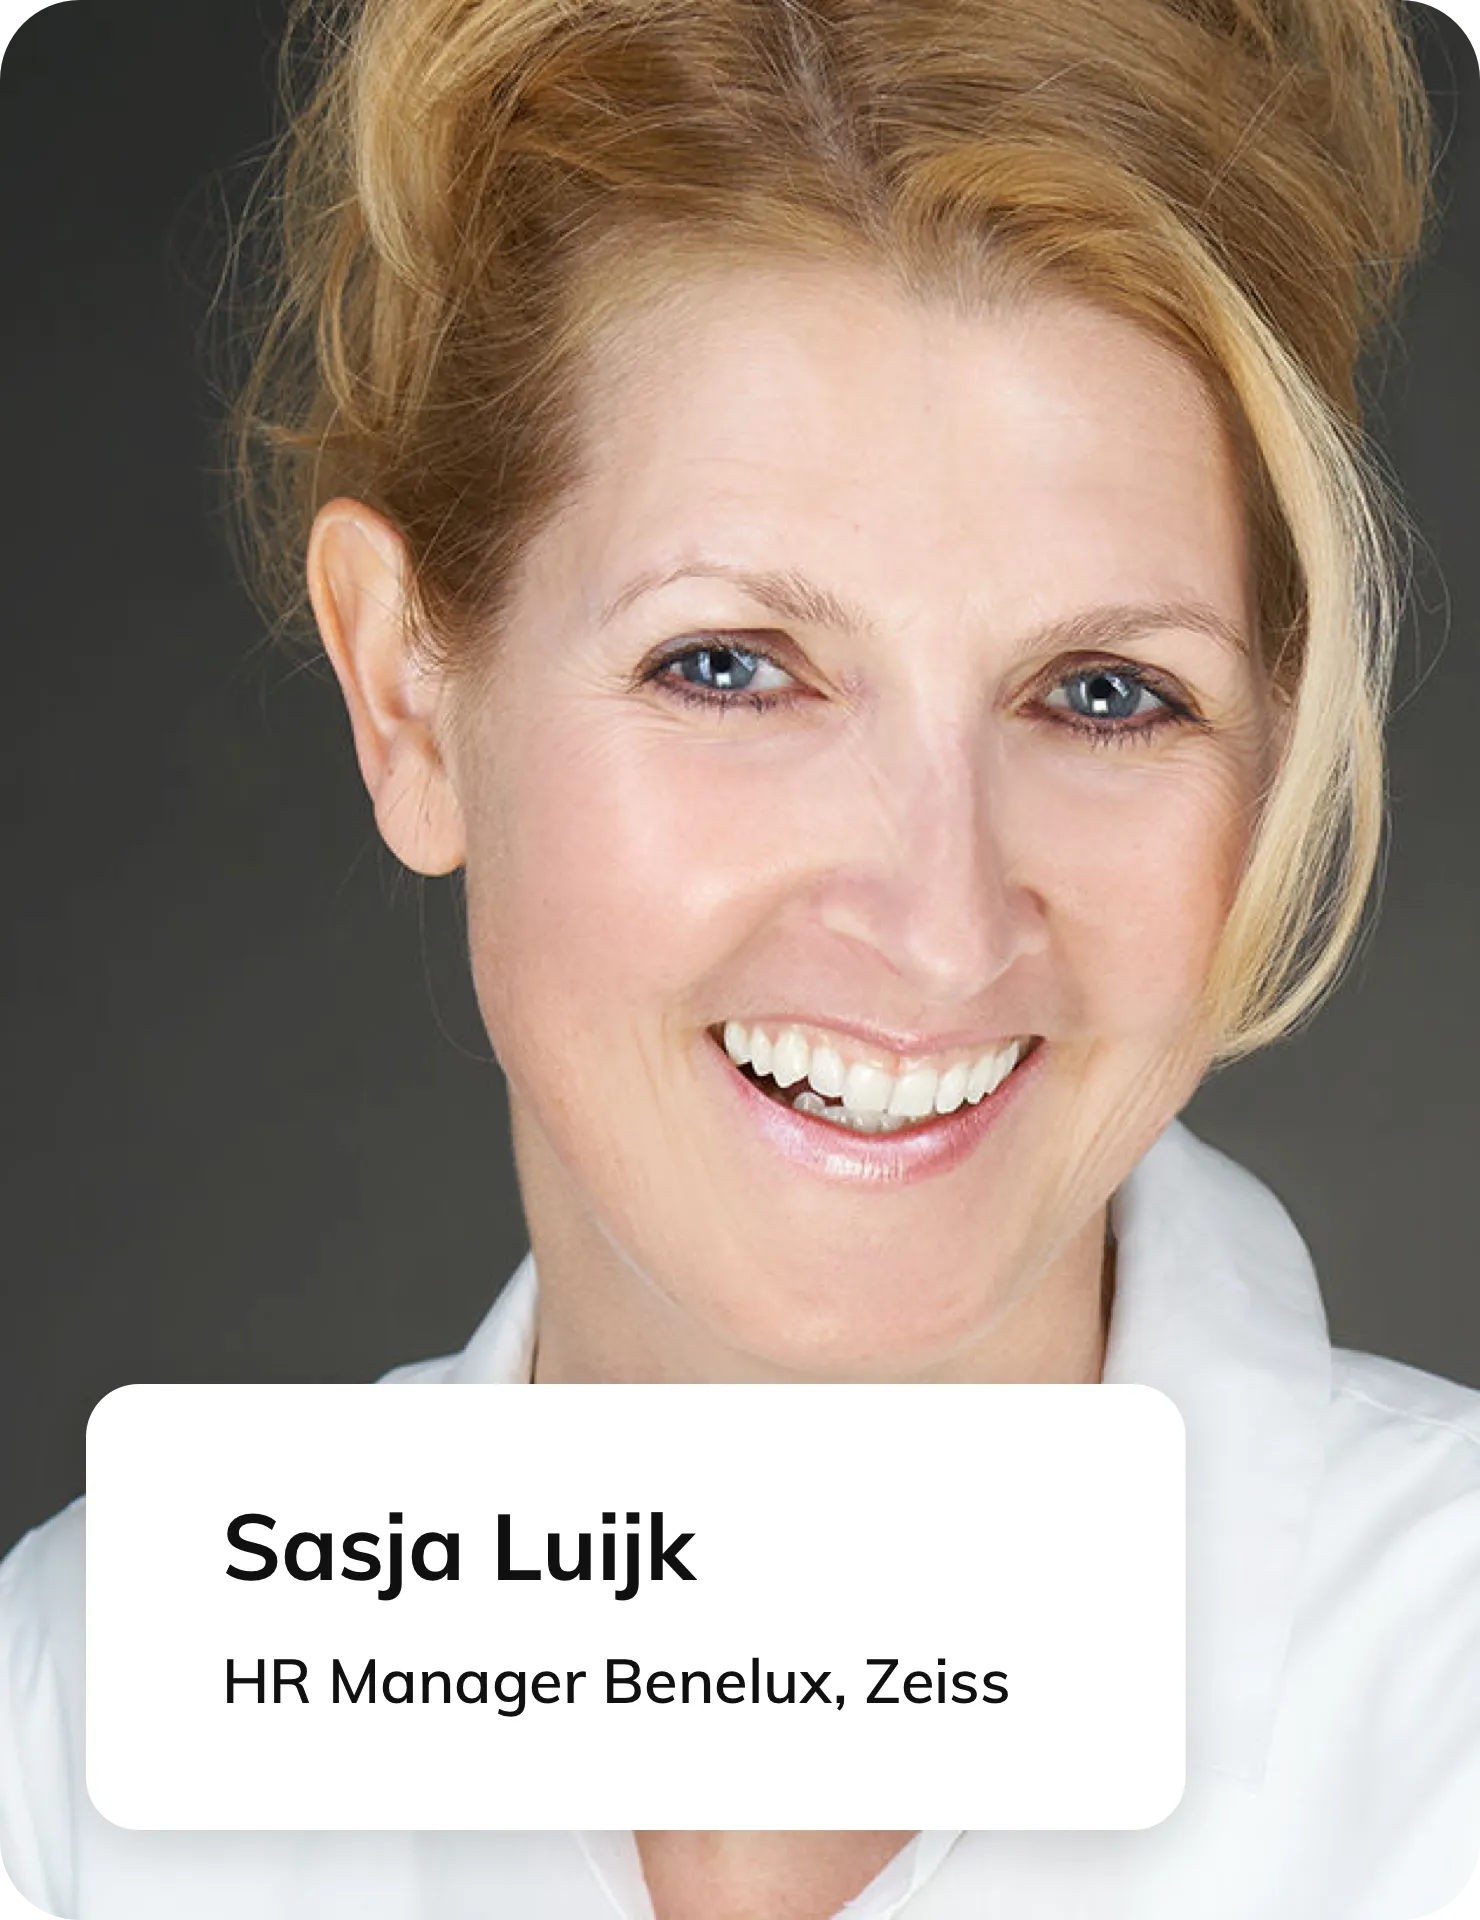 Sasja Luijk, HR Manager Benelux bij Zeiss